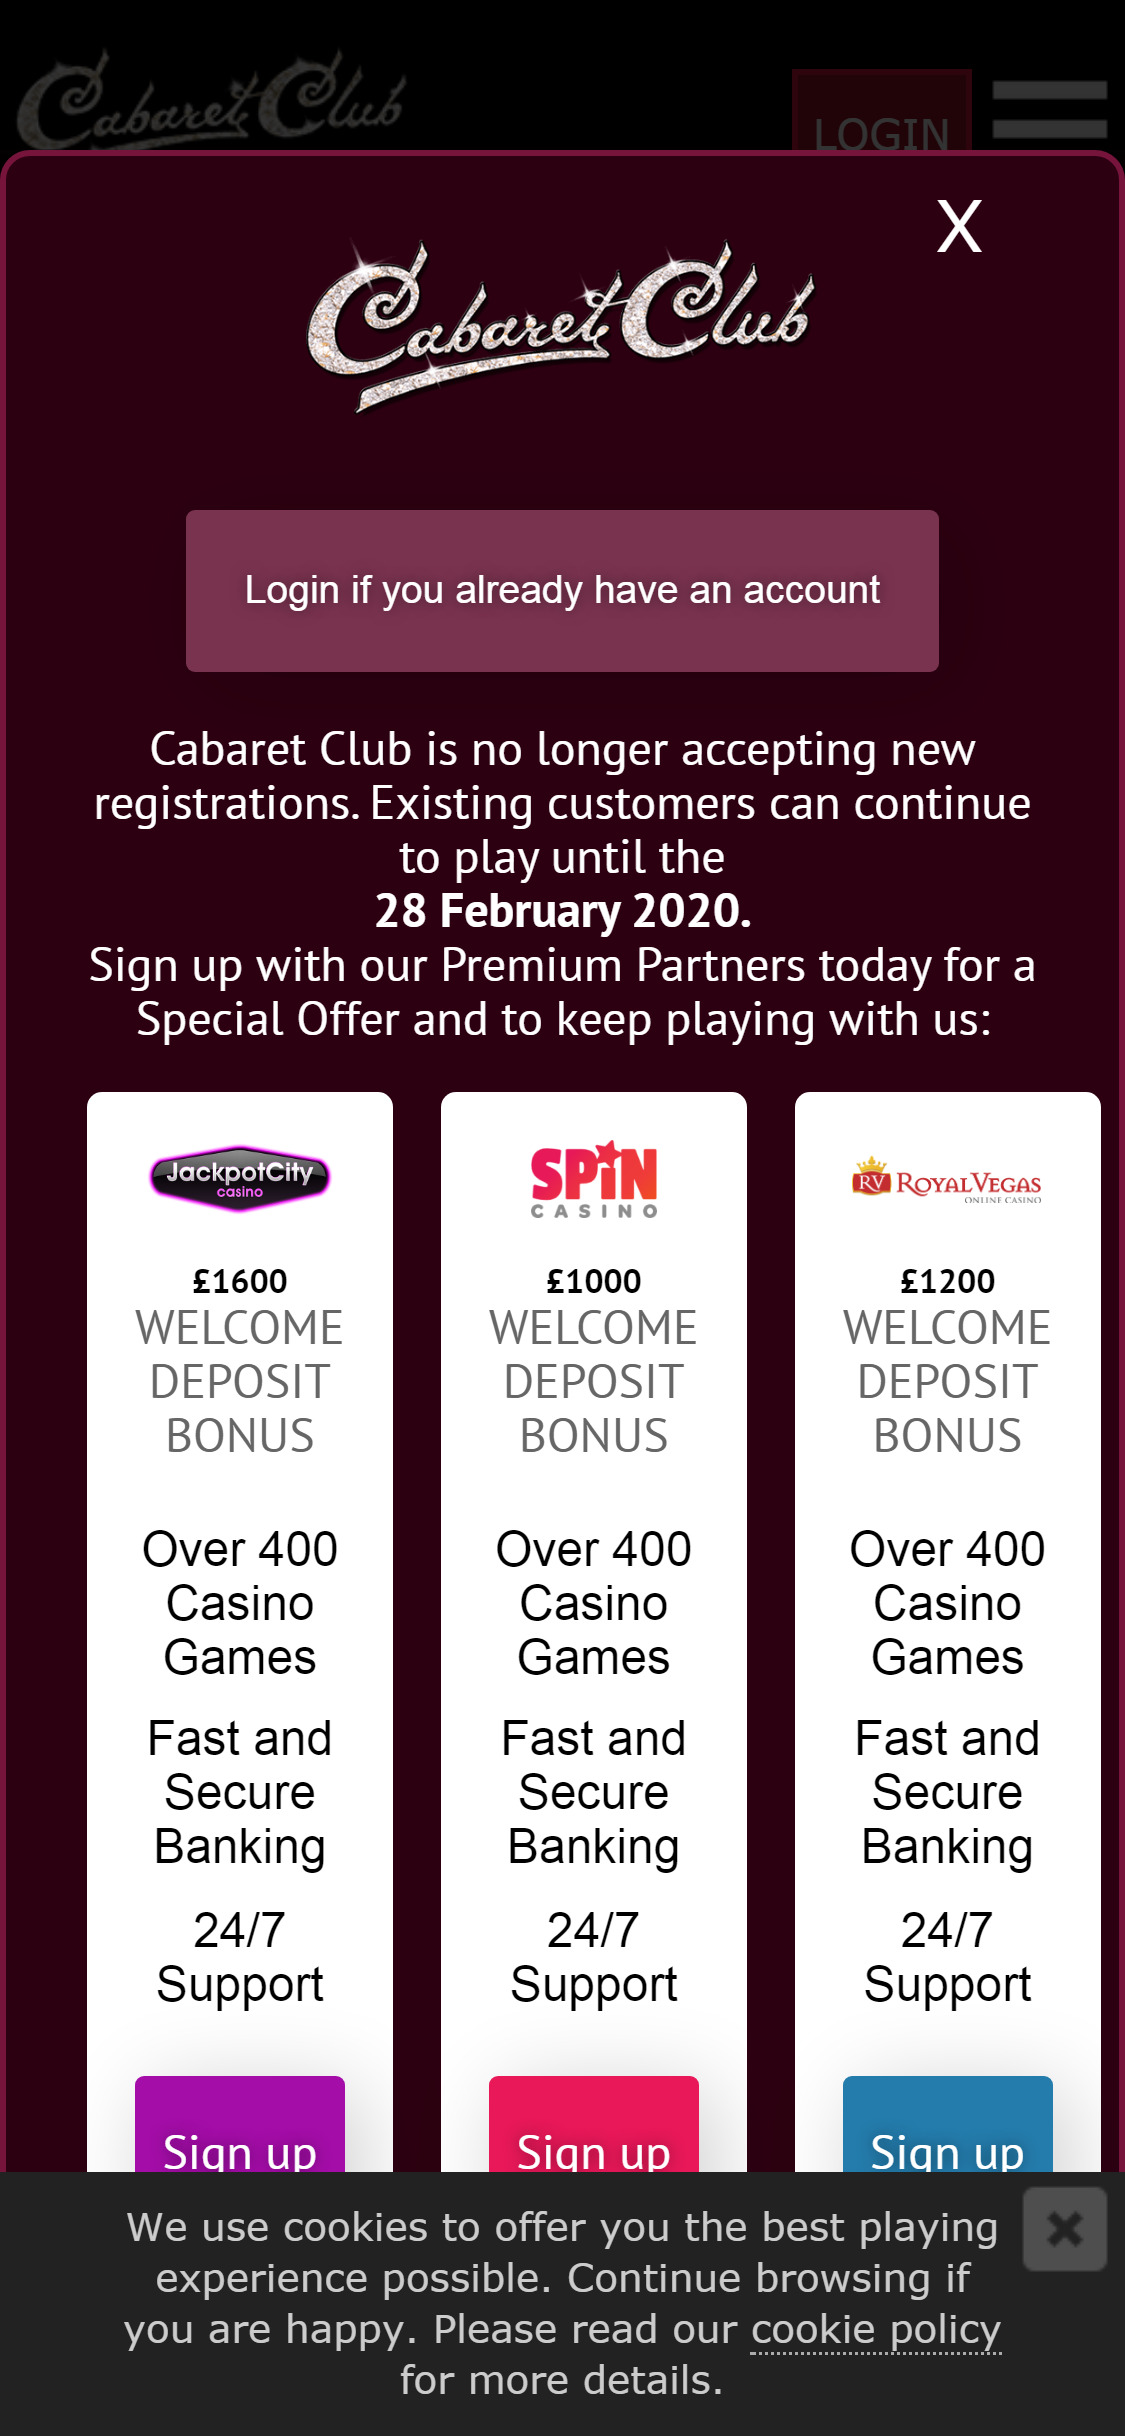 Cabaret Club Casino Mobile Login Review